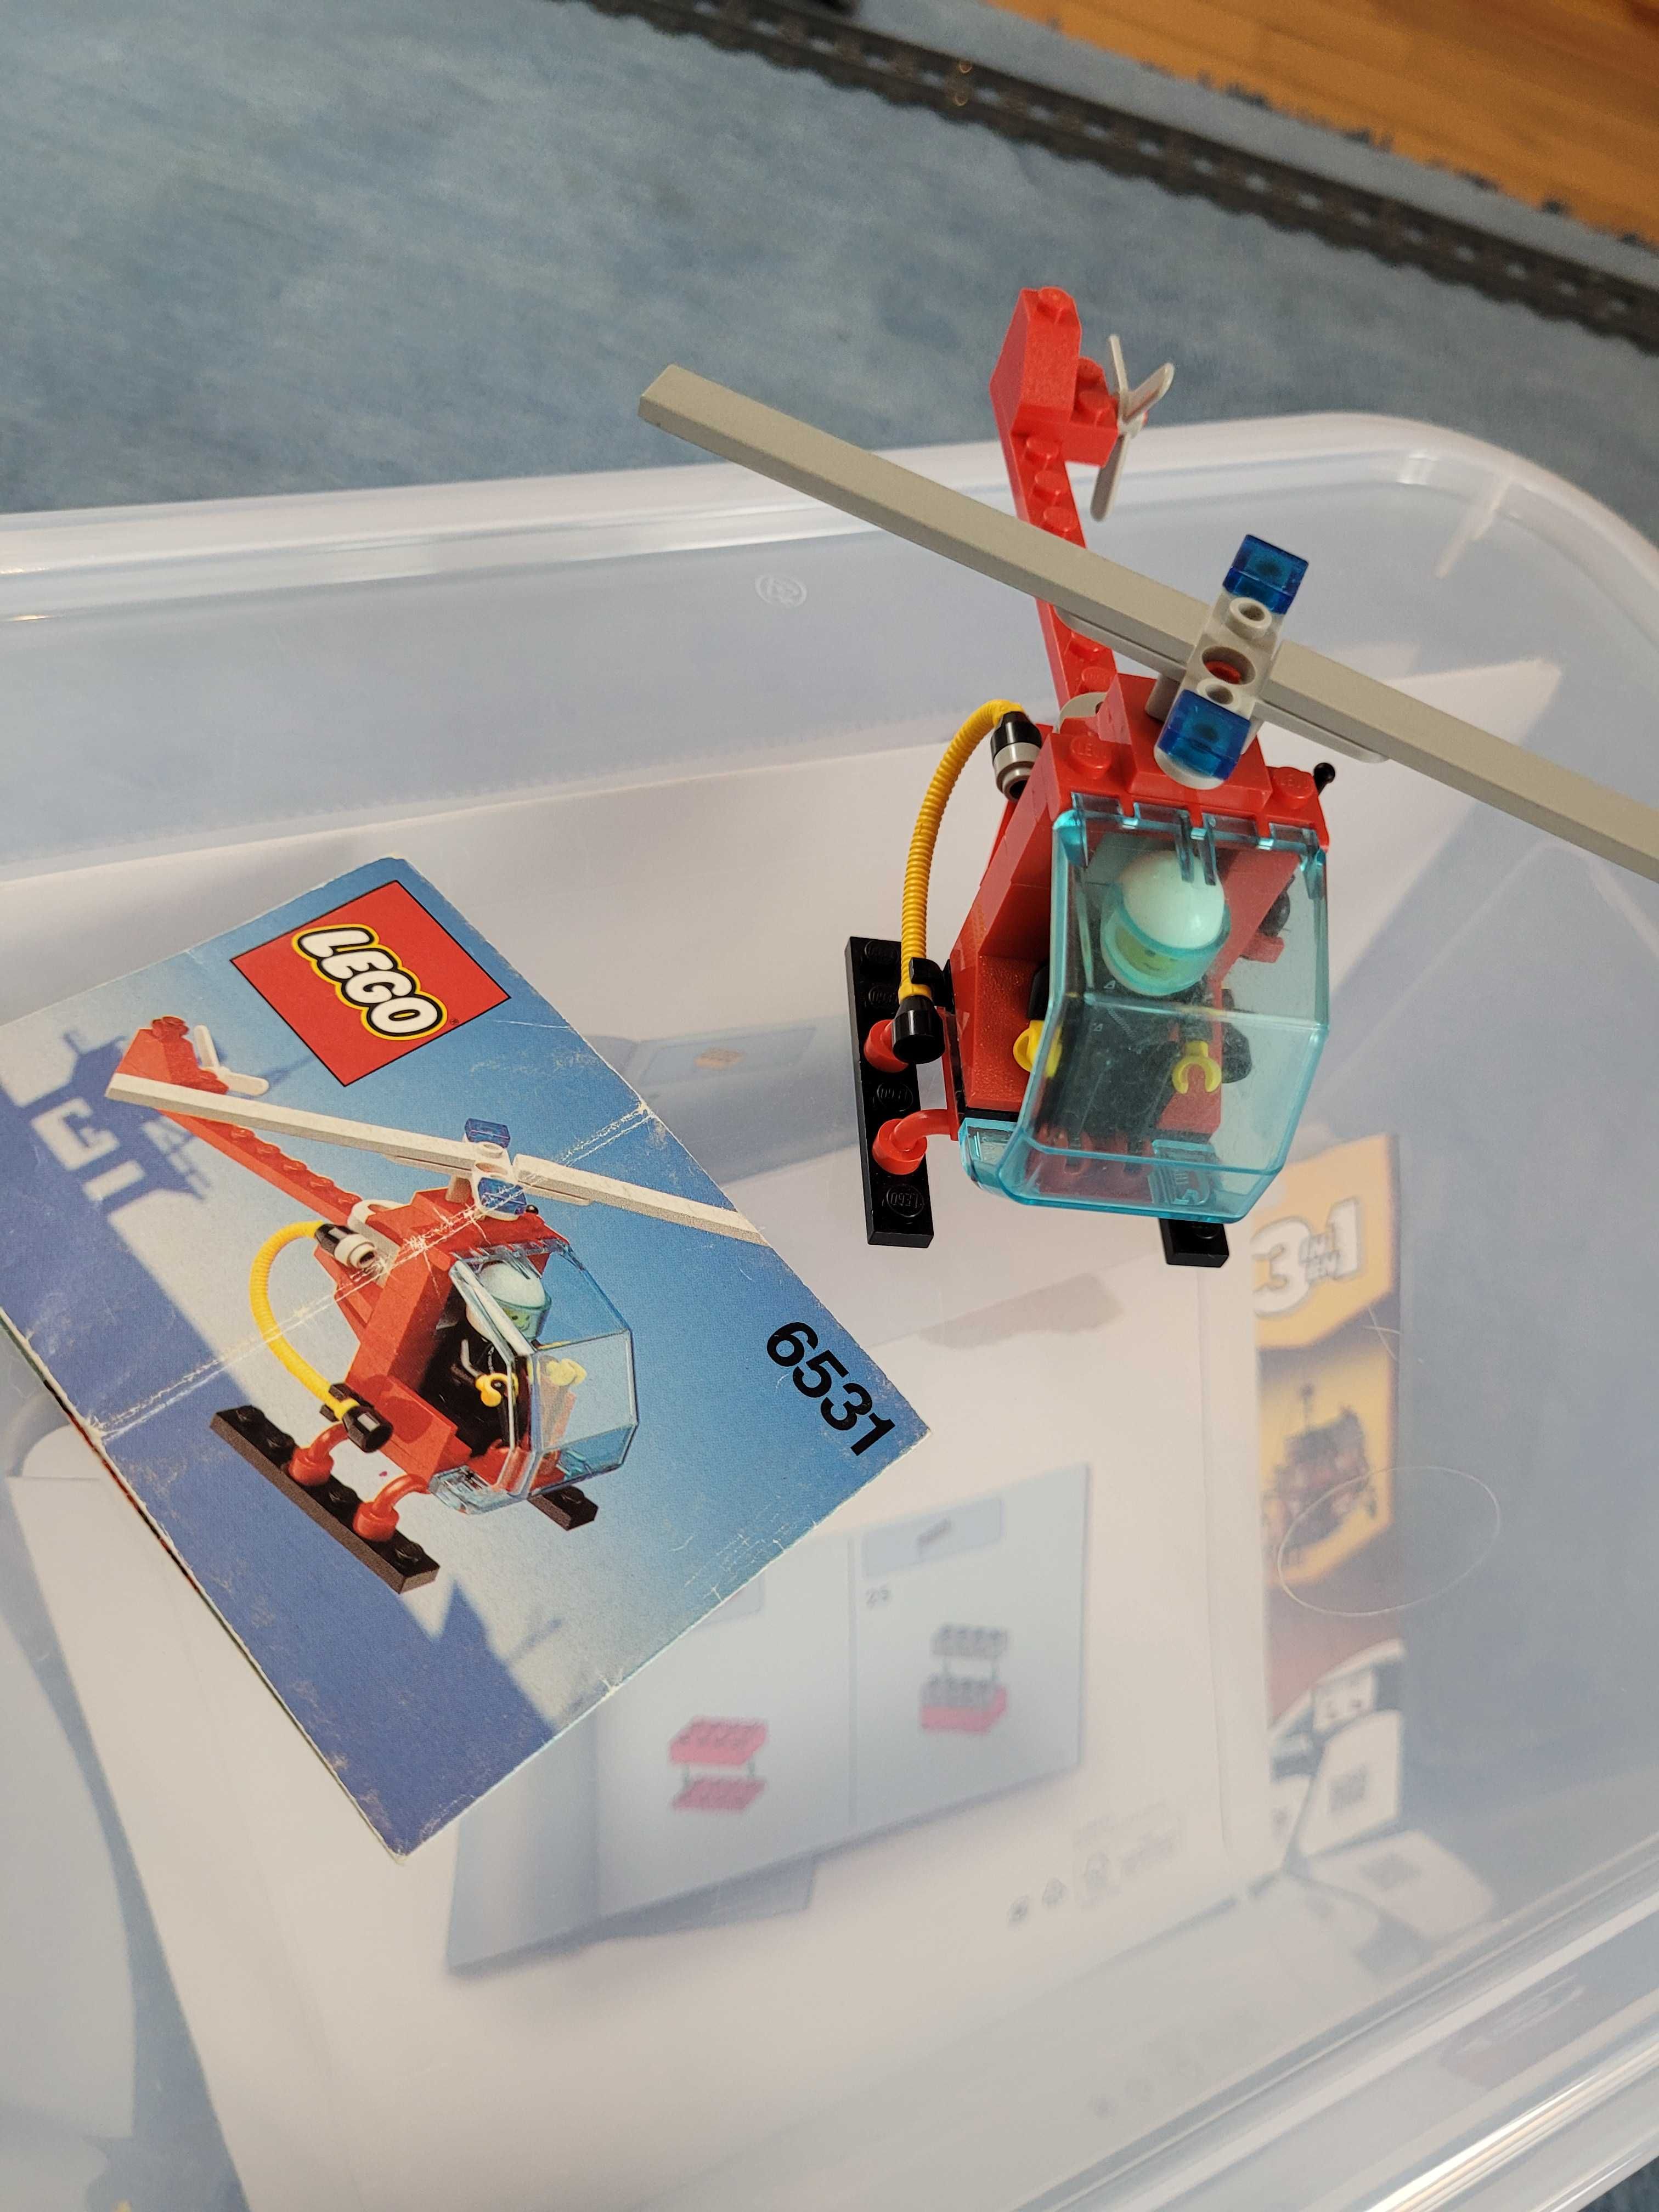 LEGO 6531 Town/City Flame Chaser Strażacki Śmigłowiec zDziałkiemWodnym